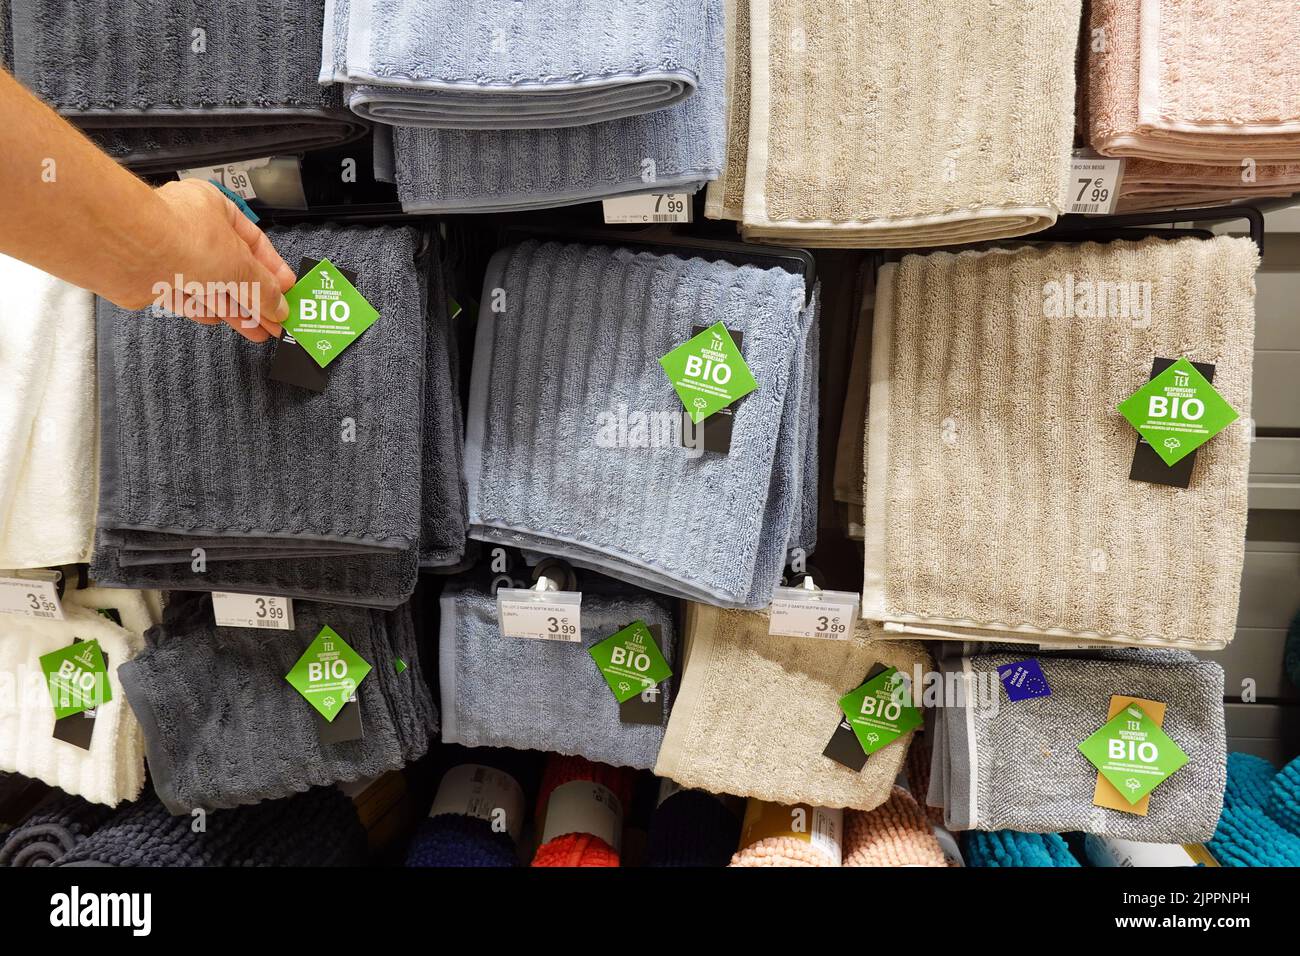 Toallas de etiqueta biológica en una tienda Foto de stock